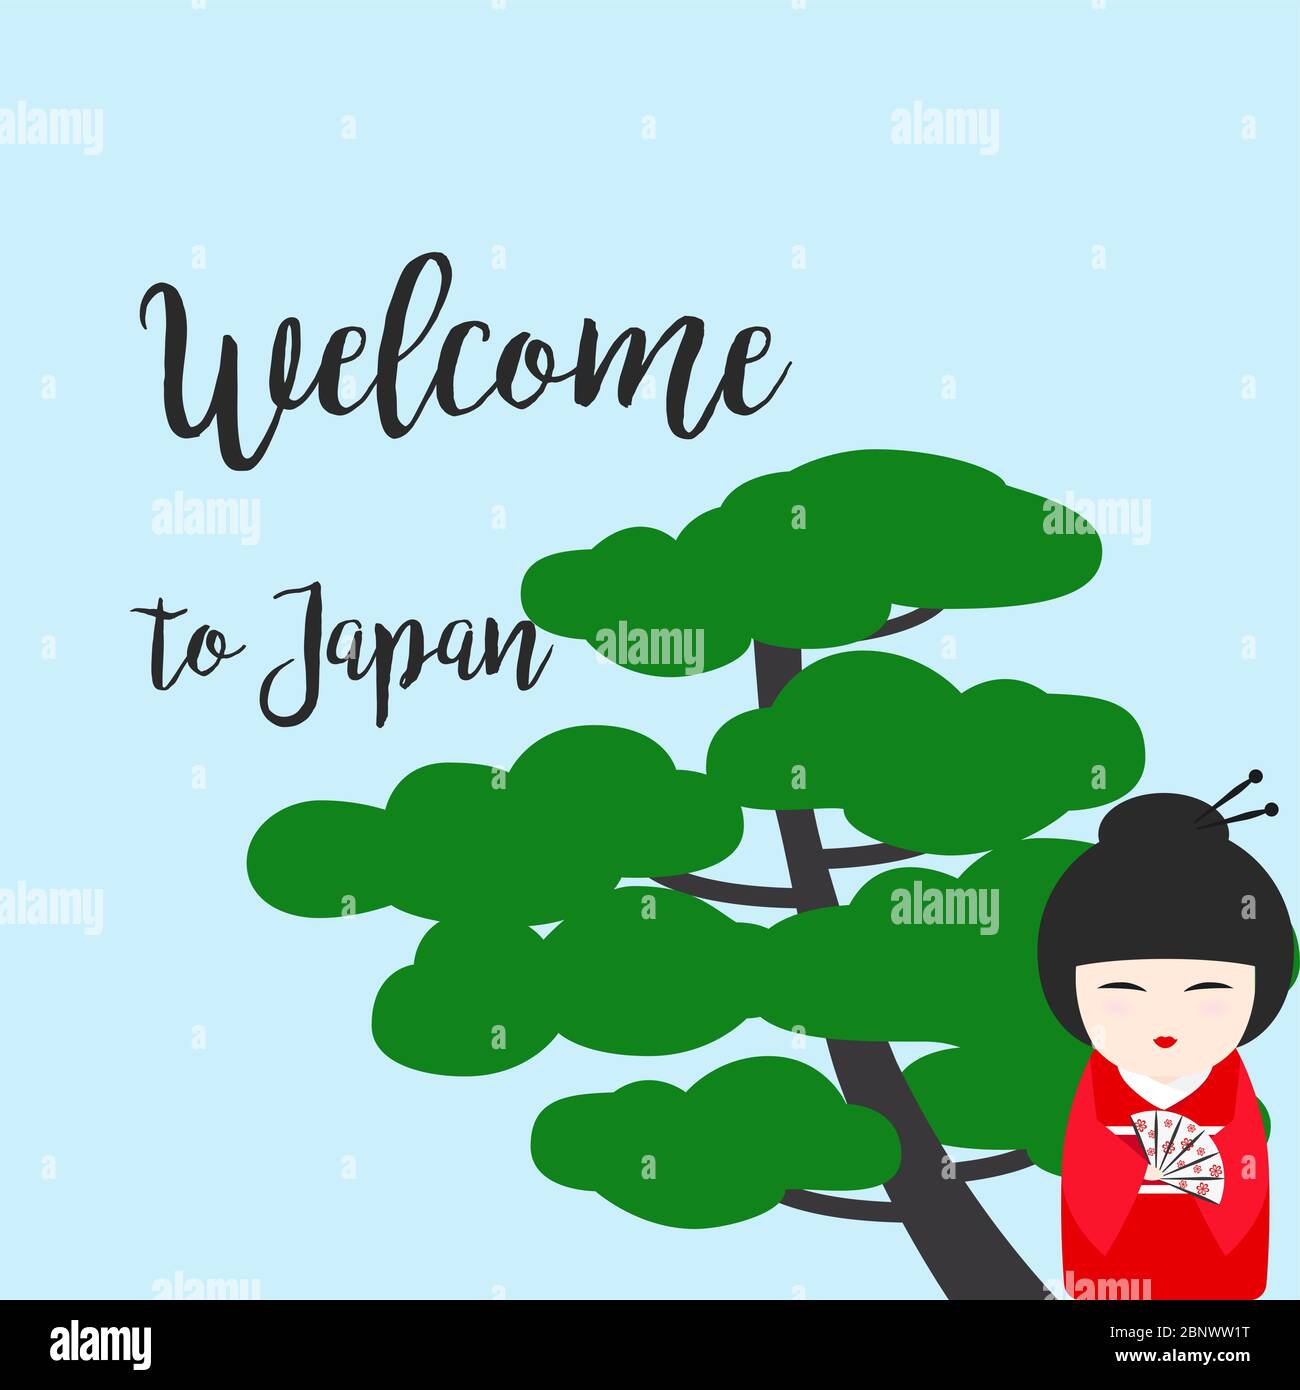 Bienvenue au Japon. Illustration vectorielle avec poupée Kokeshi japonaise Illustration de Vecteur